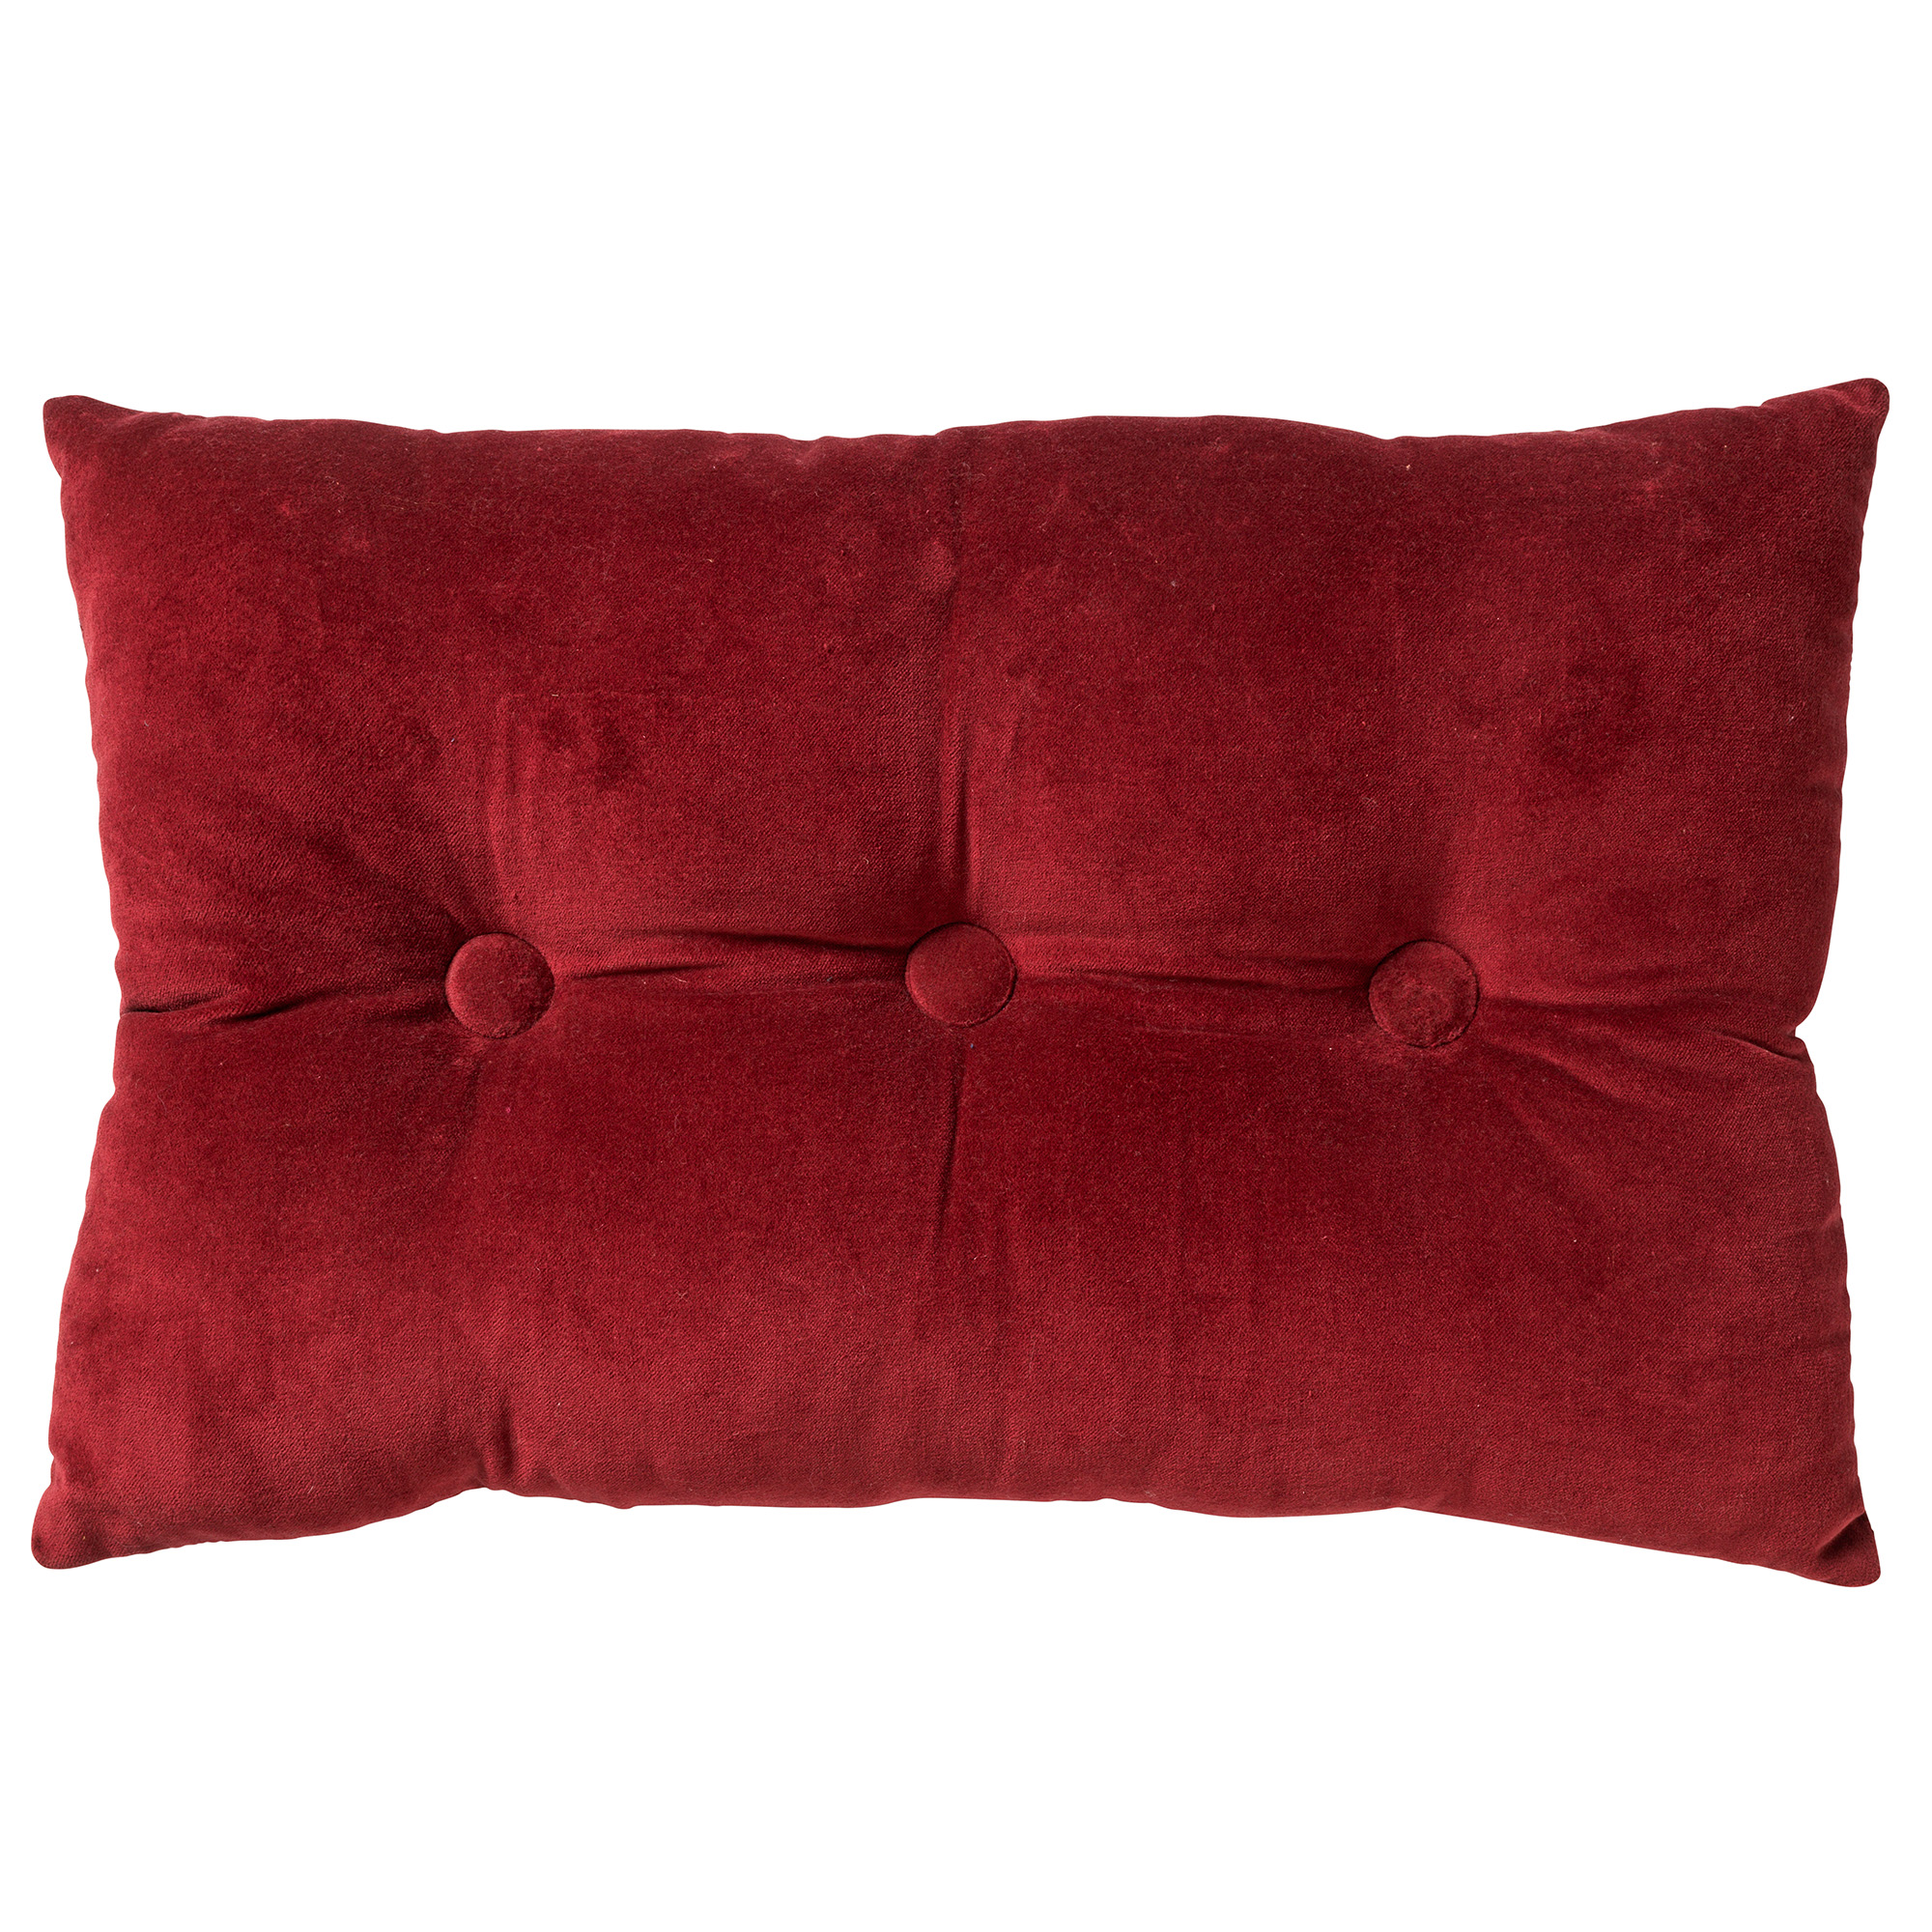 Coussin - rouge en velours 40x60 cm uni